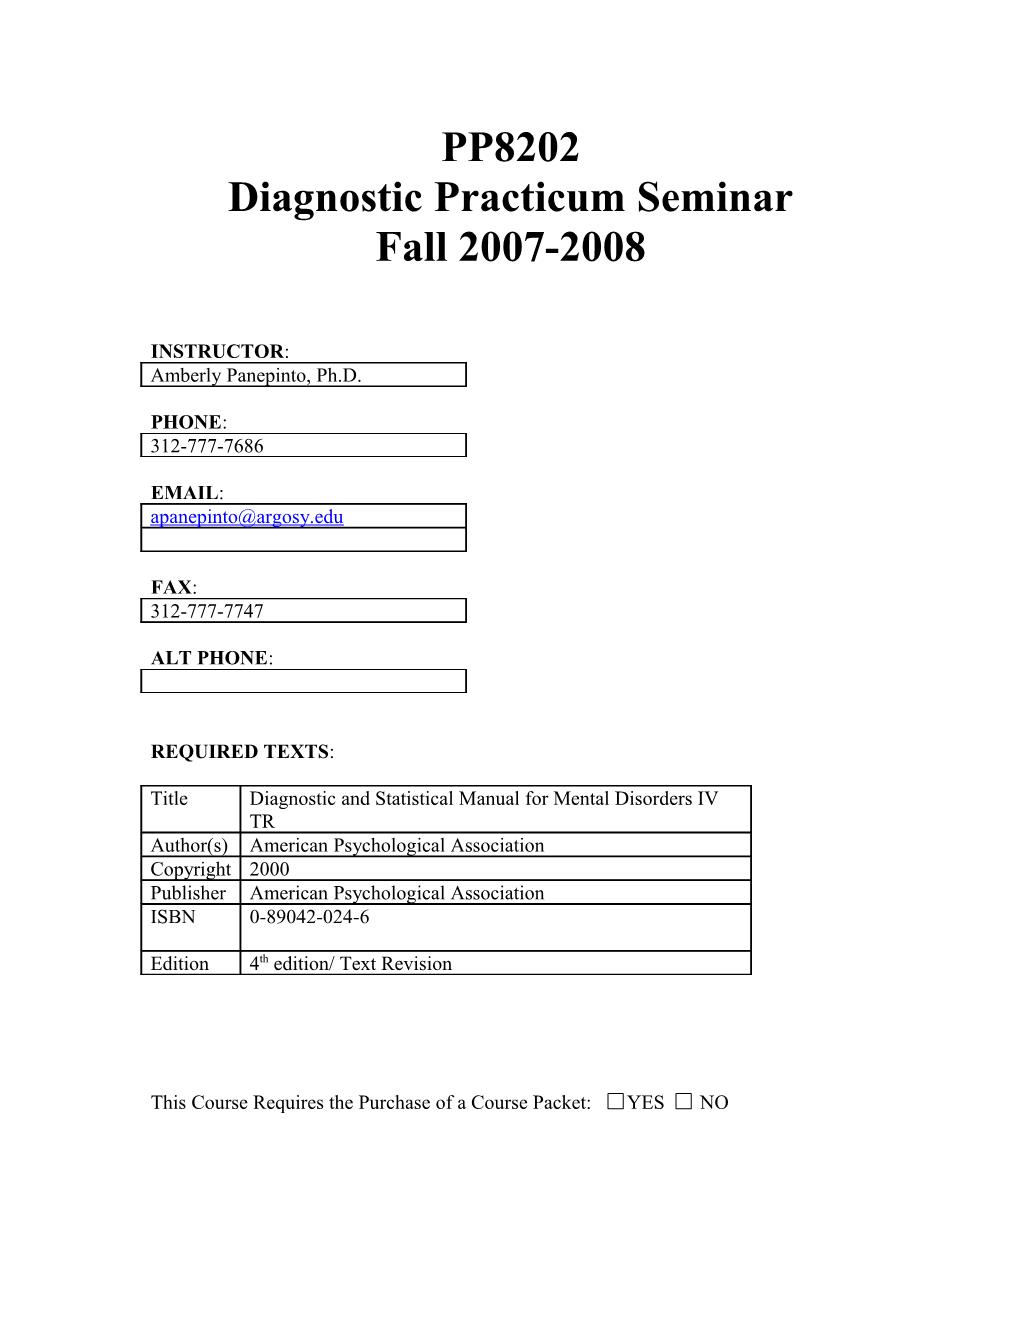 Diagnostic Practicum Seminar